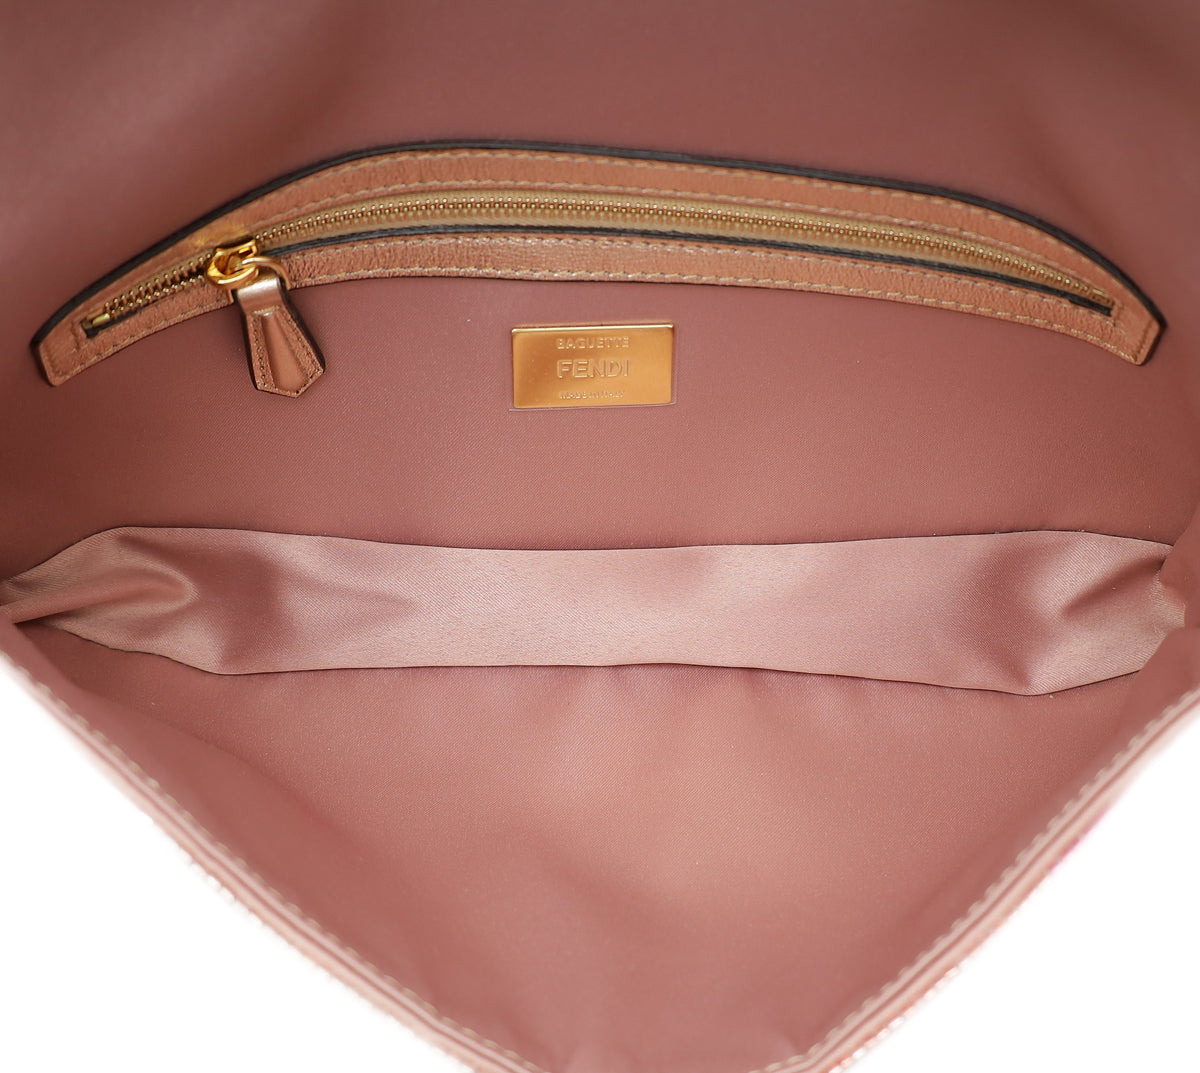 Fendi Rose Poudre Satin Baguette 1997 Bag Sequin Embellished Medium Bag